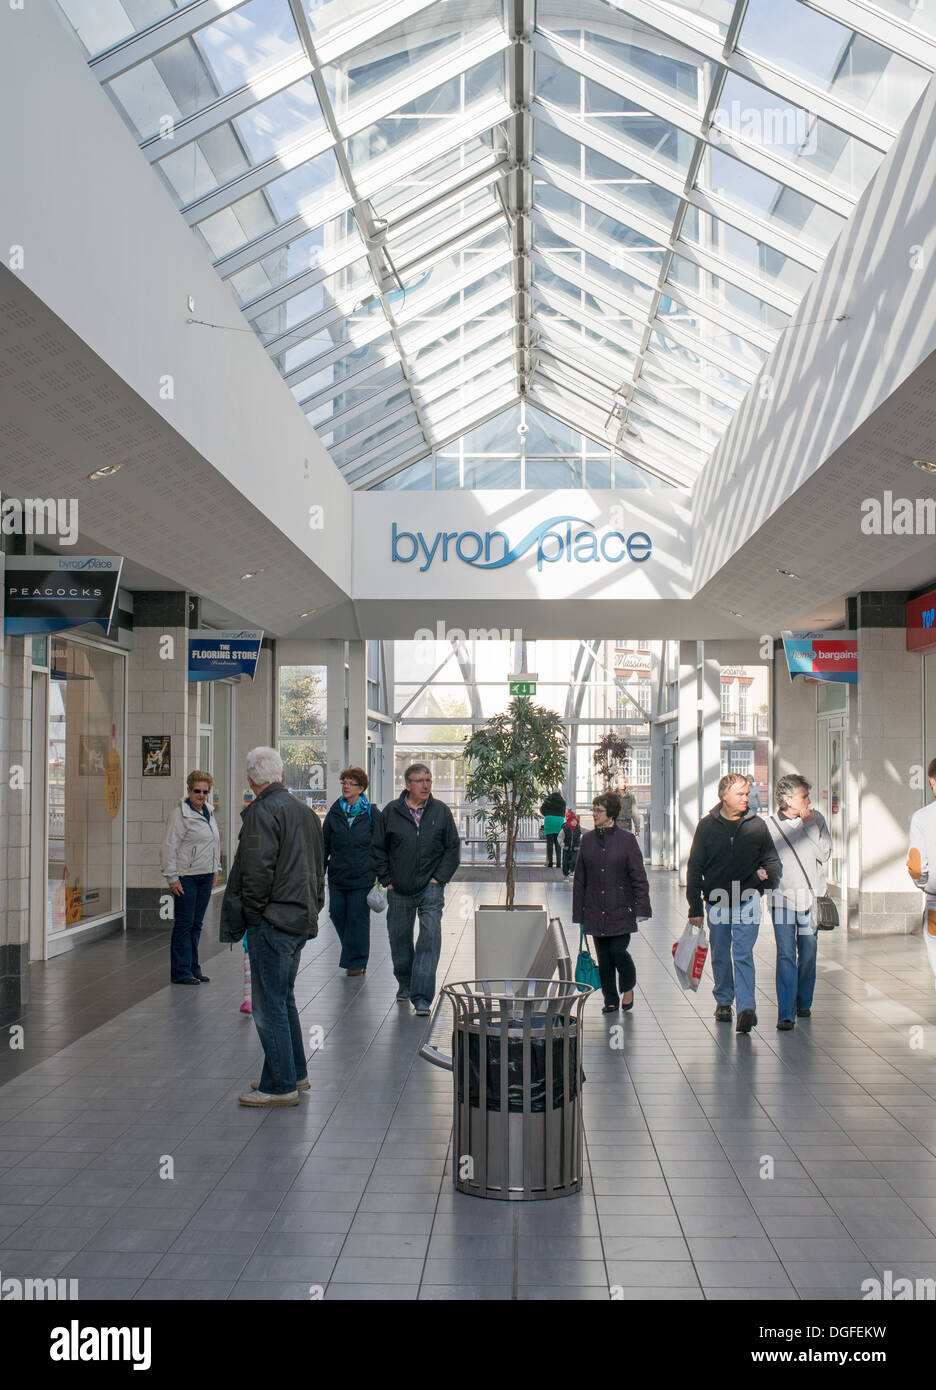 Innenansicht des Byron Place Einkaufszentrum Seaham, Nord-Ost-England, UK Stockfoto